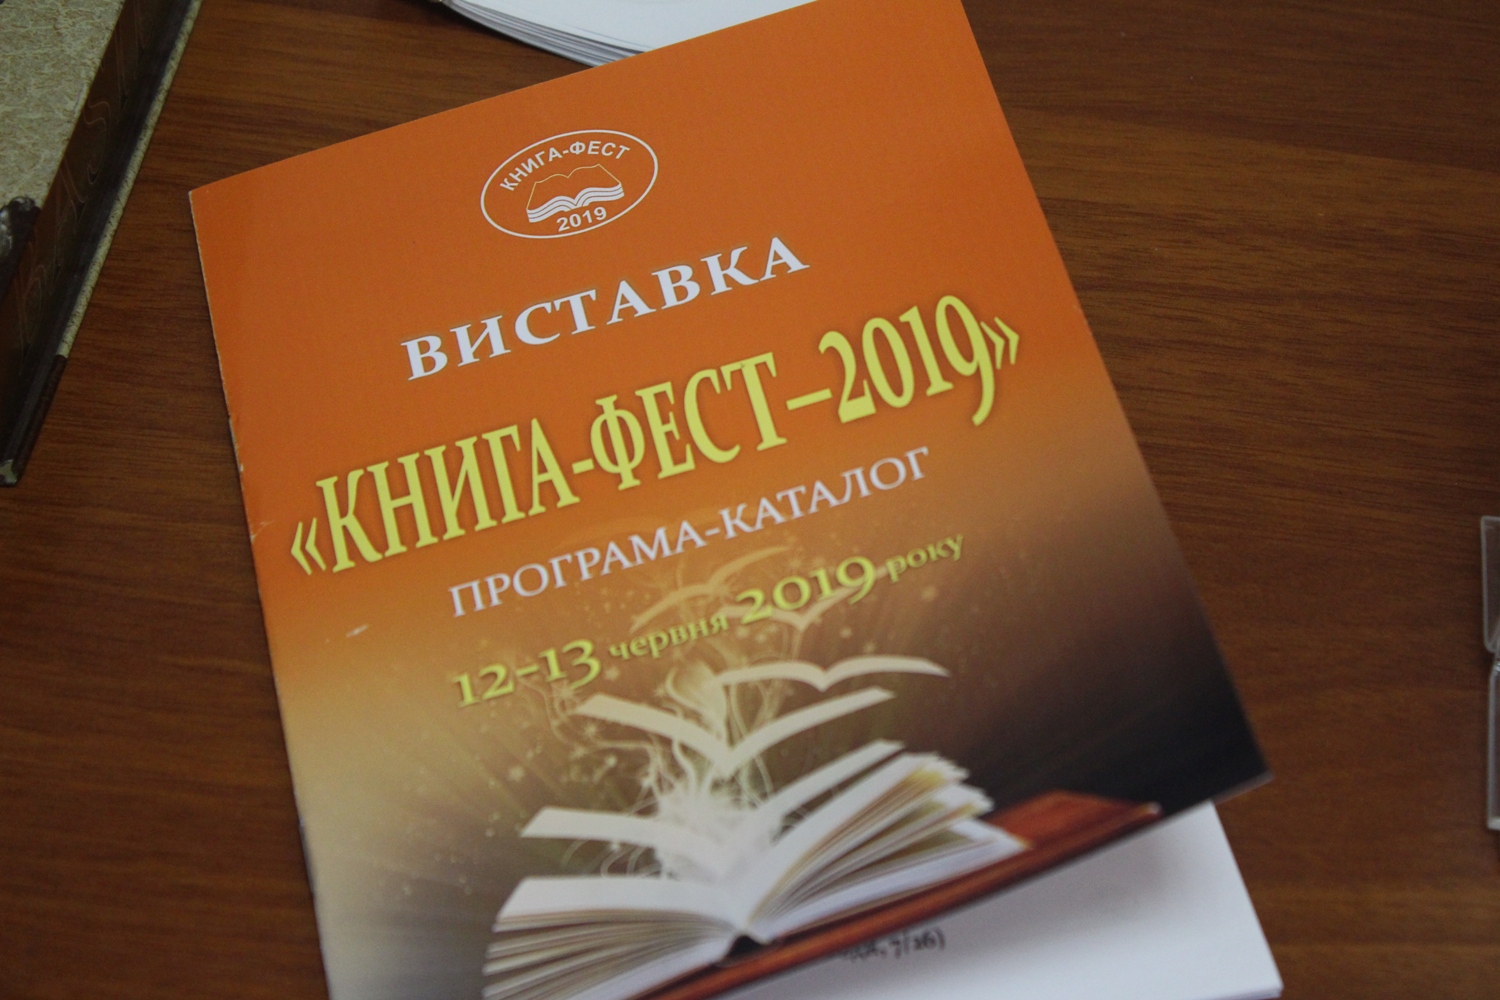 Відкриття традиційного, уже восьмого, «Книга-фесту 2019» відбулося сьогодні в Ужгороді в однойменній галереї